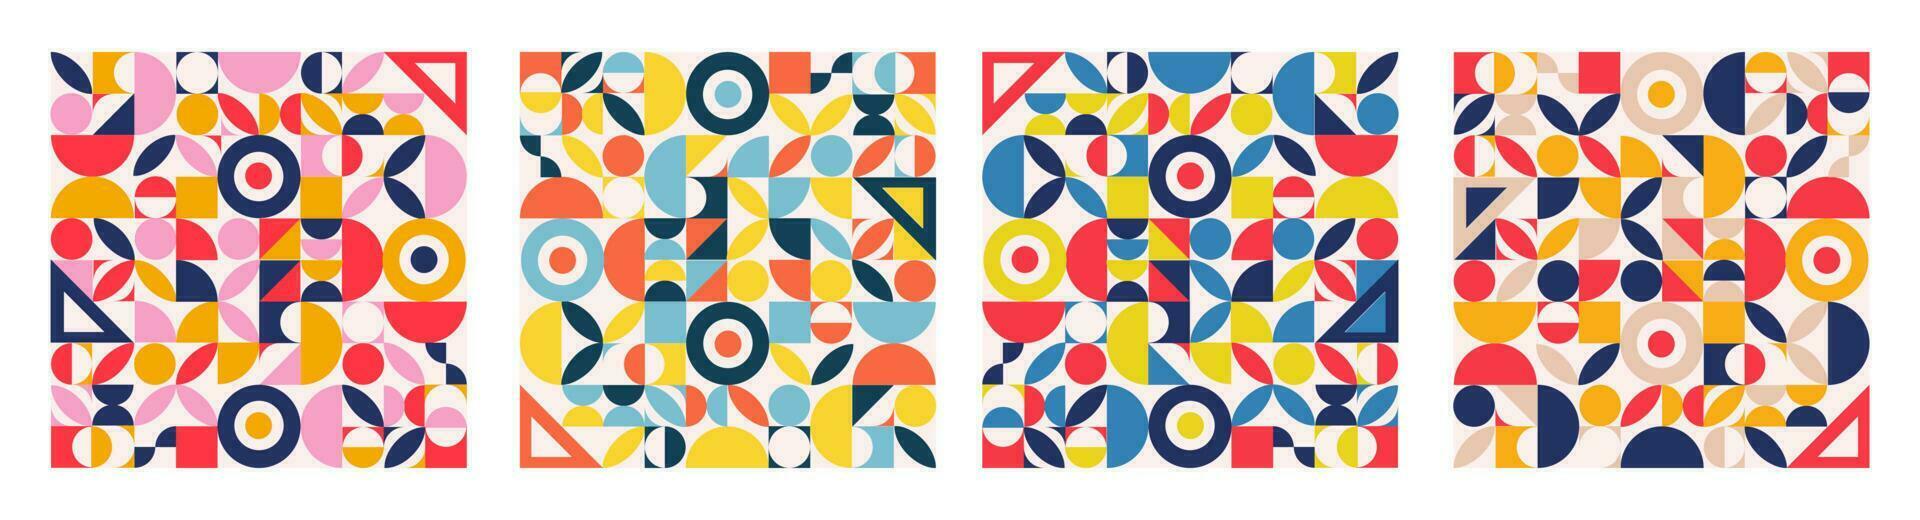 uppsättning av geometri minimalistisk konstverk affisch med enkel form och figur. abstrakt vektor mönster design i scandinavian stil för webb baner, företag presentation, branding paket, tyg skriva ut,